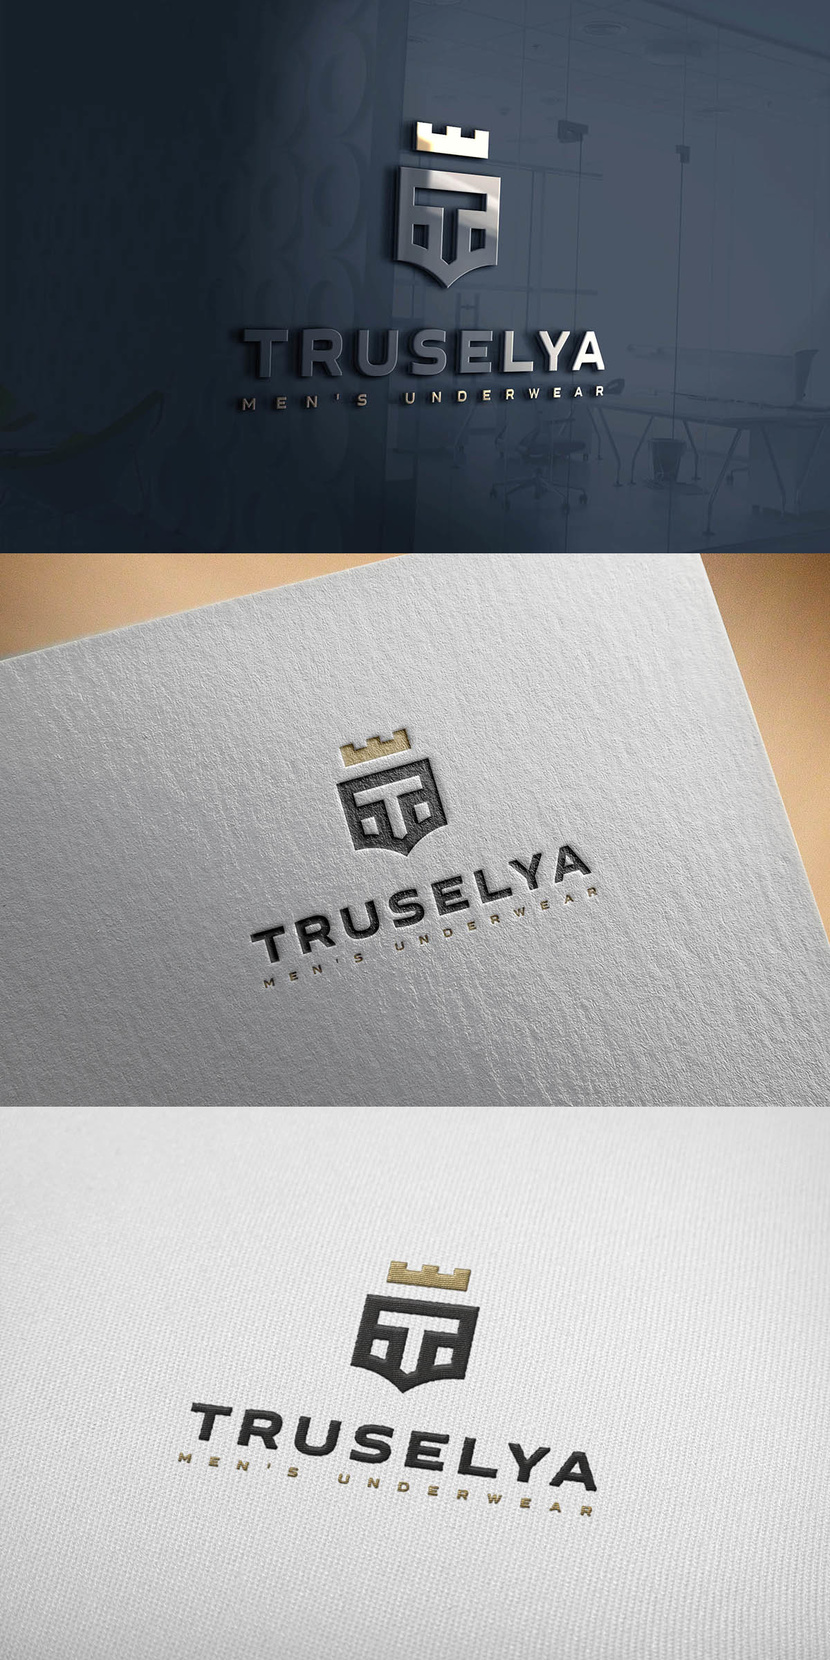 трусы + Т + щит + шлем + корона - Логотип для сети магазинов и интернет магазина мужского нижнего белья "Труселя" truselya.ru